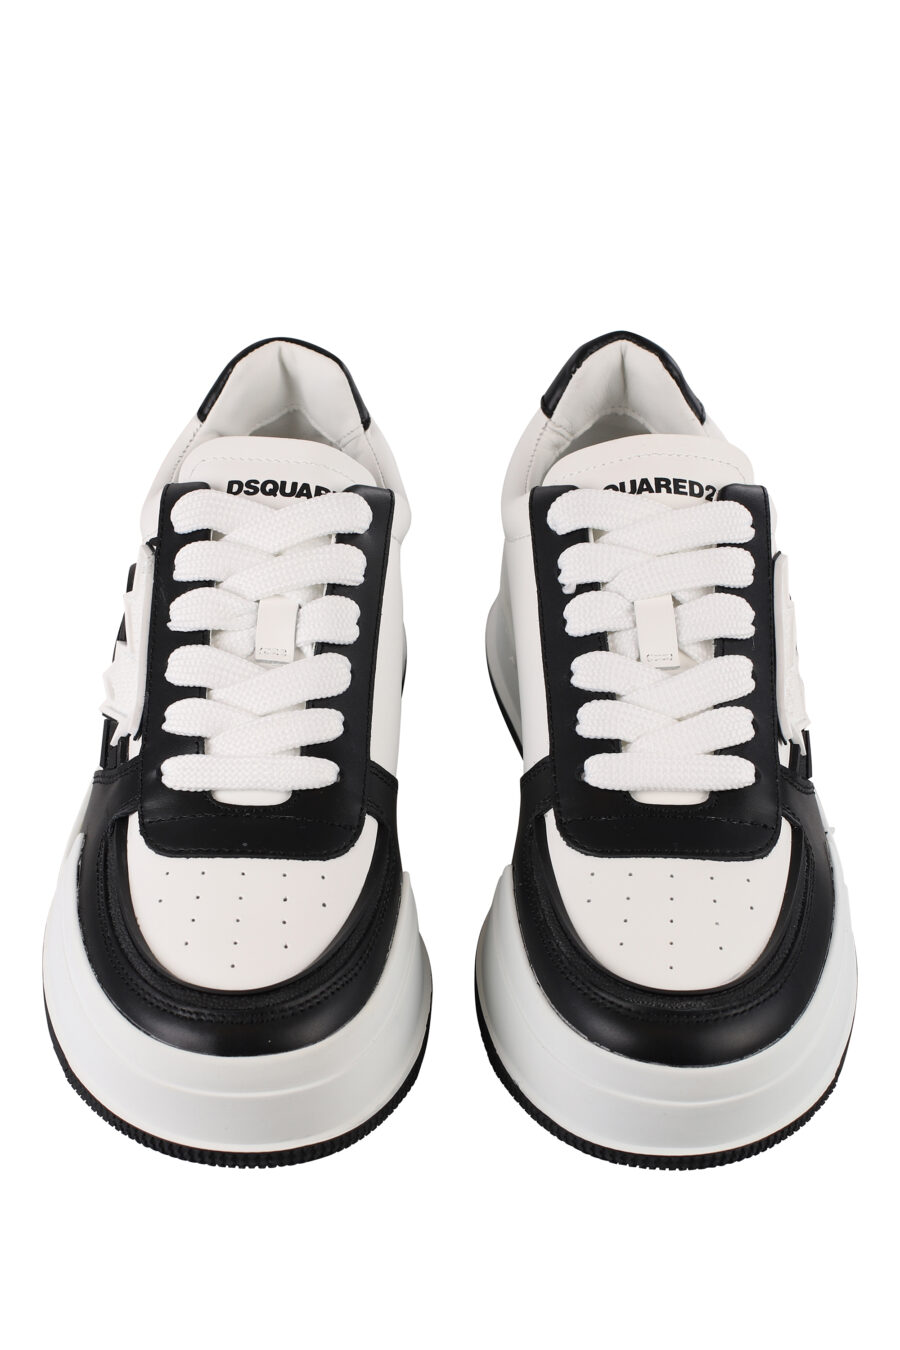 Zapatillas blancas con negro y hoja blanca - IMG 1224